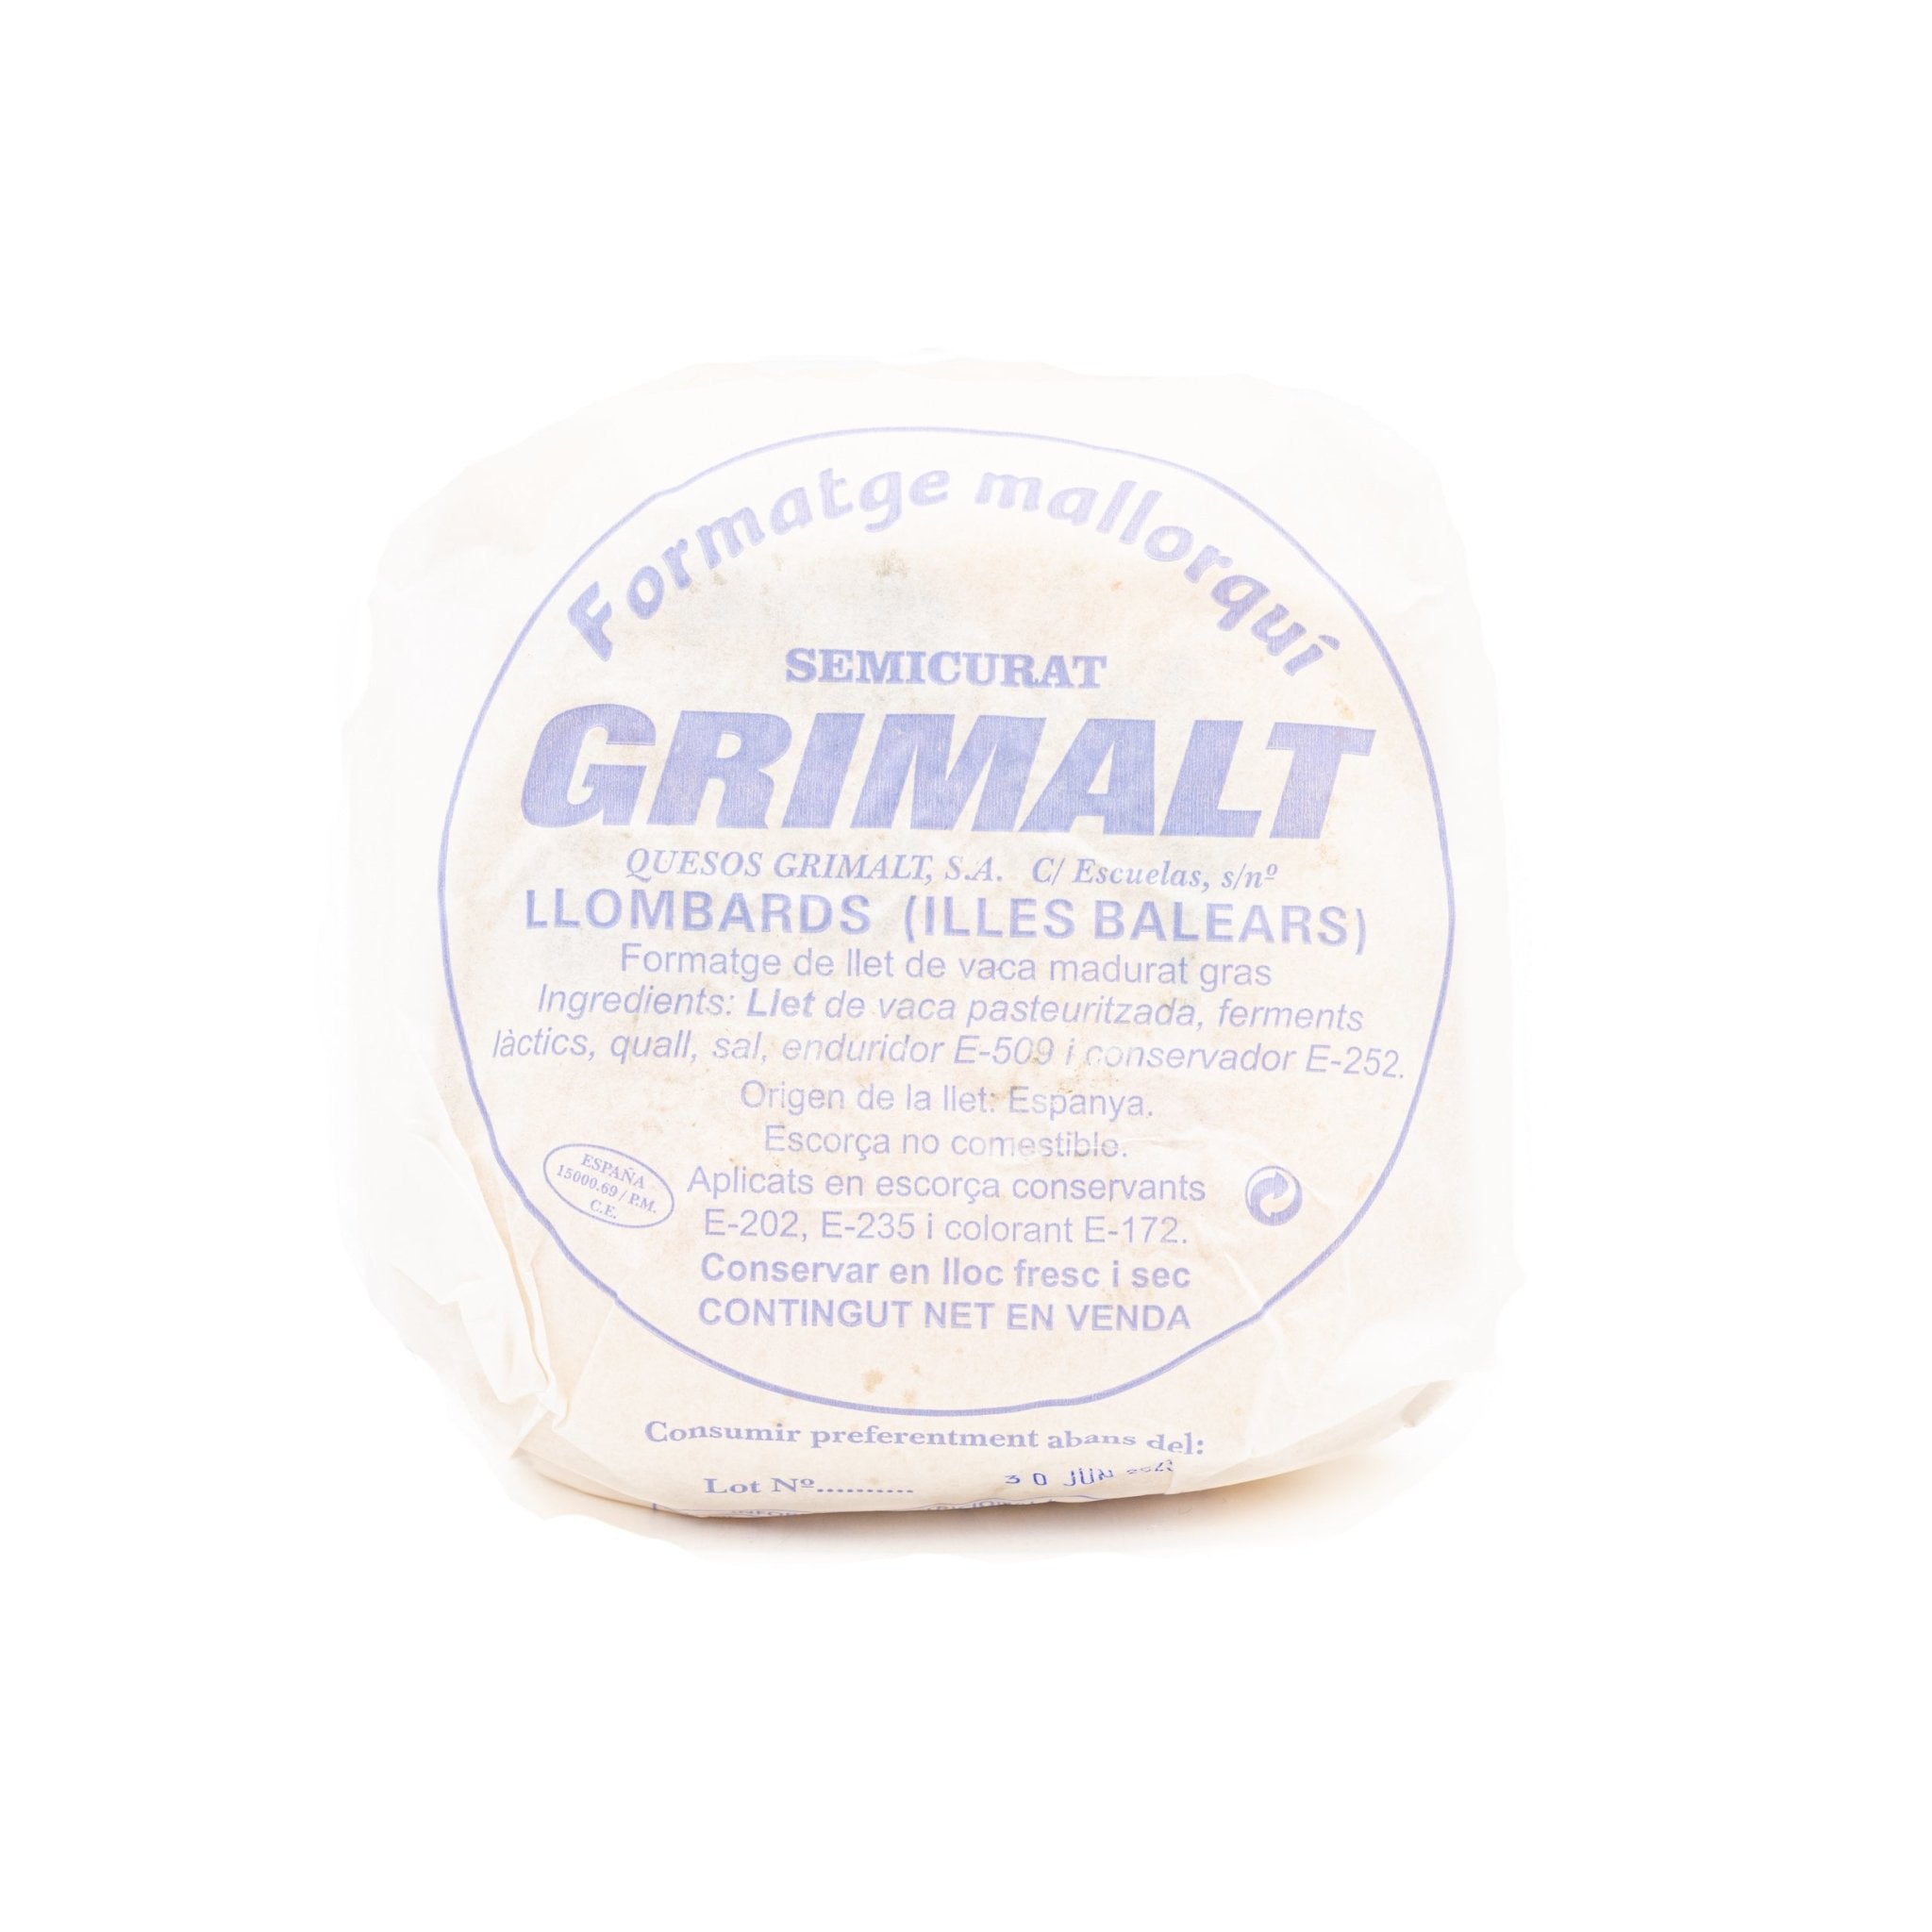 Queso Grimalt Semi Mini im ganzen (ca. 850g) - Gourmet Markt - Quesos Grimalt